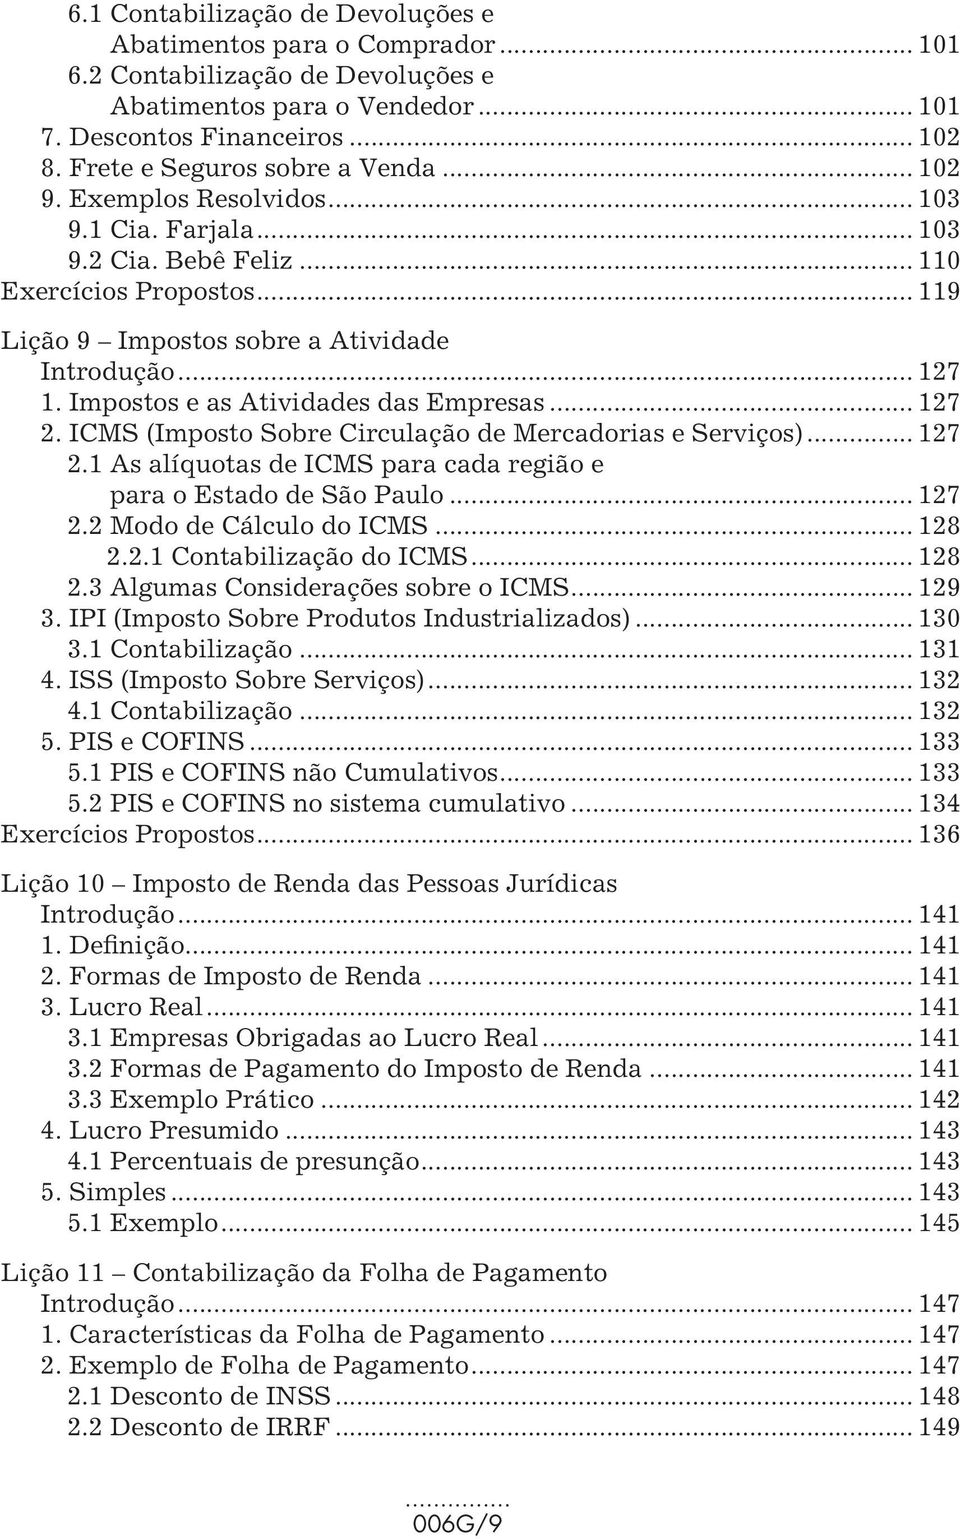 Impostos e as Atividades das Empresas... 127 2. ICMS (Imposto Sobre Circulação de Mercadorias e Serviços)... 127 2.1 As alíquotas de ICMS para cada região e para o Estado de São Paulo... 127 2.2 Modo de Cálculo do ICMS.